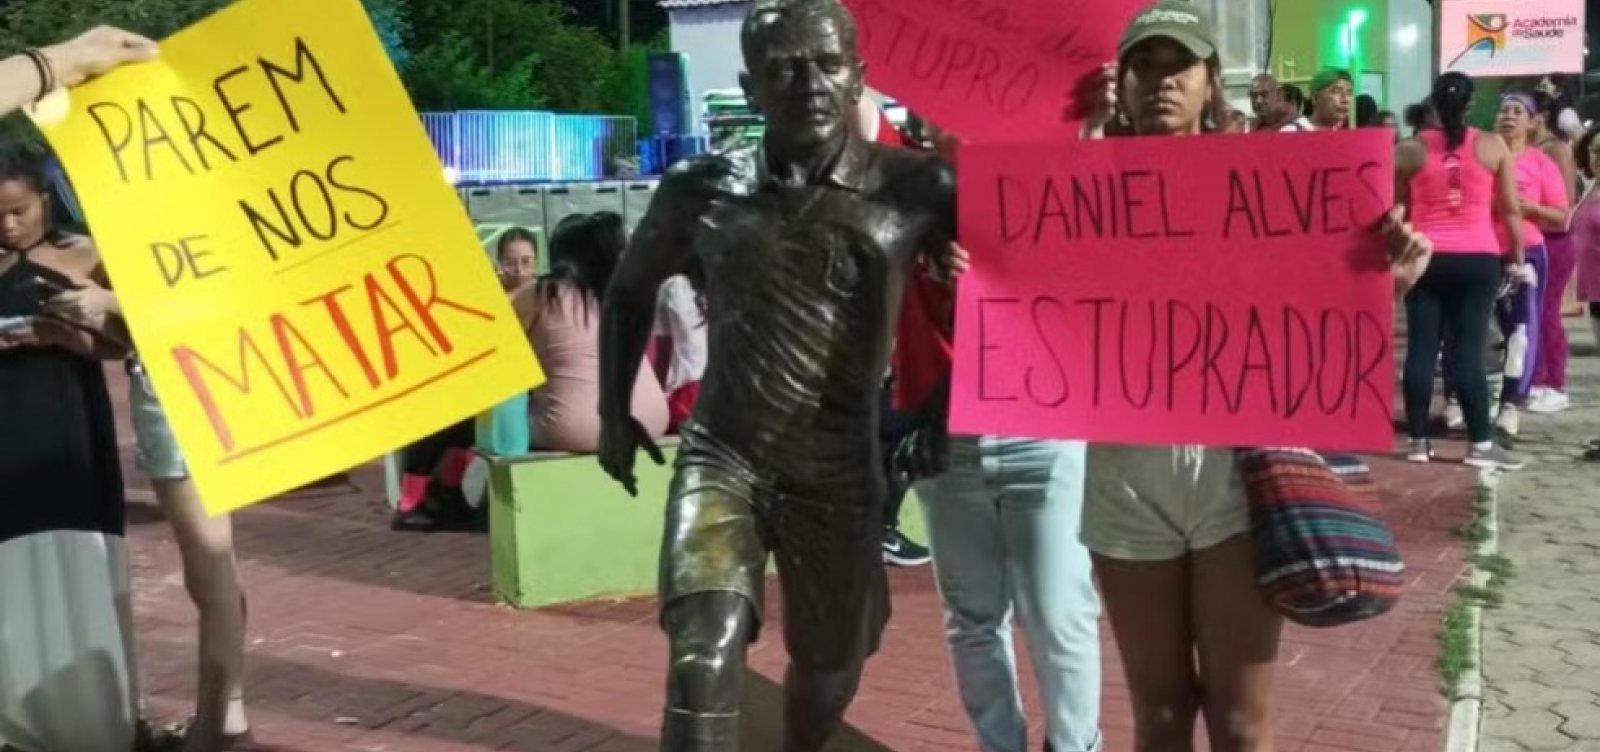 Ministério Público recomenda retirada de estátua em homenagem a Daniel Alves na Bahia